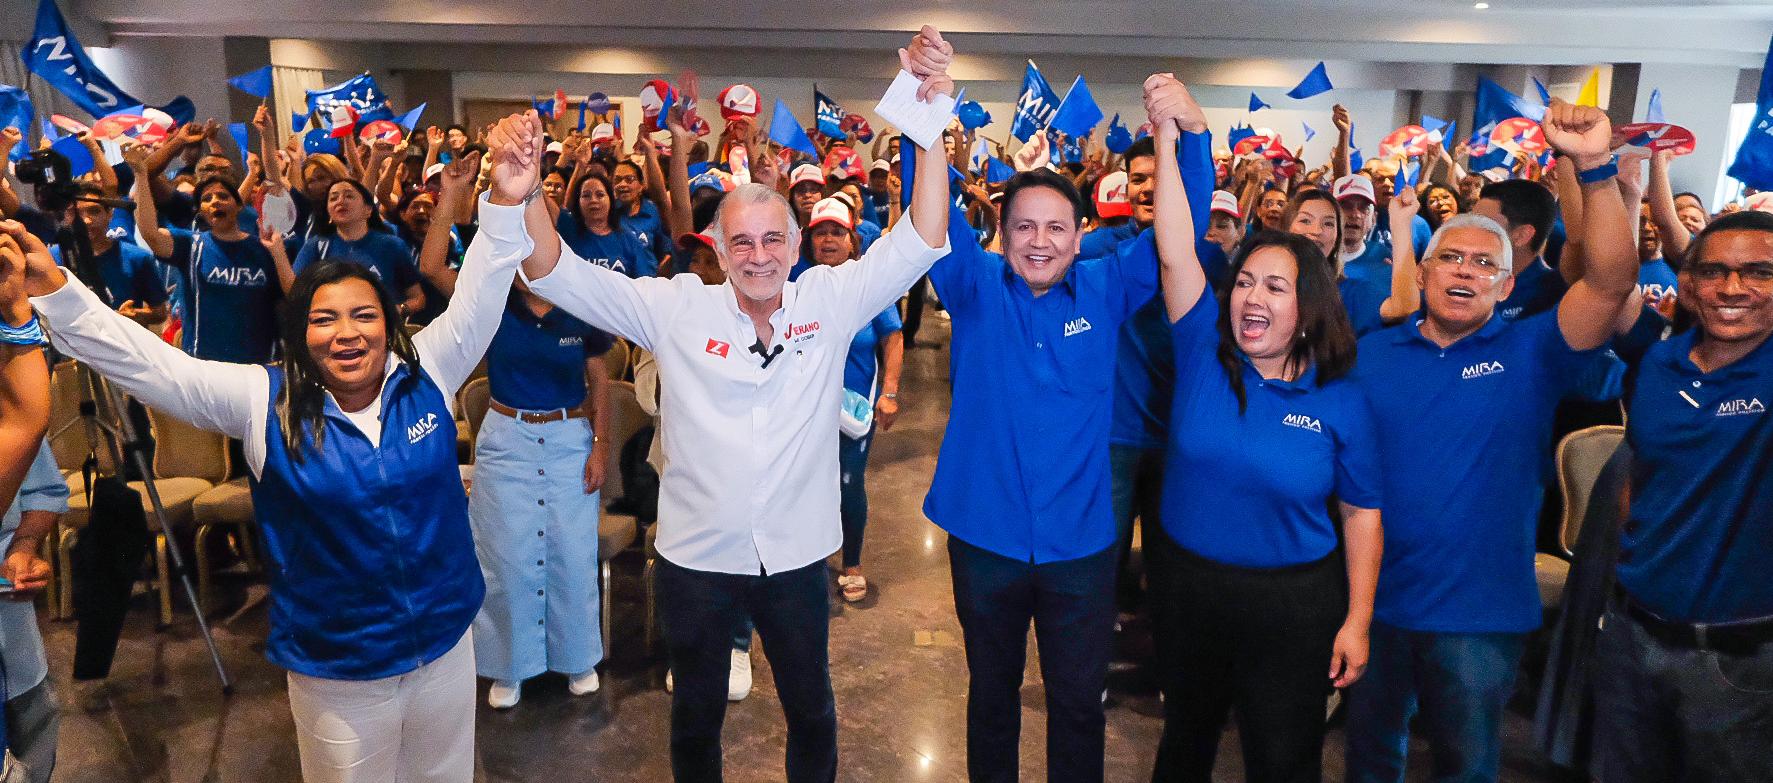 Partido Mira deja en firme adhesión a la candidatura de Eduardo Verano